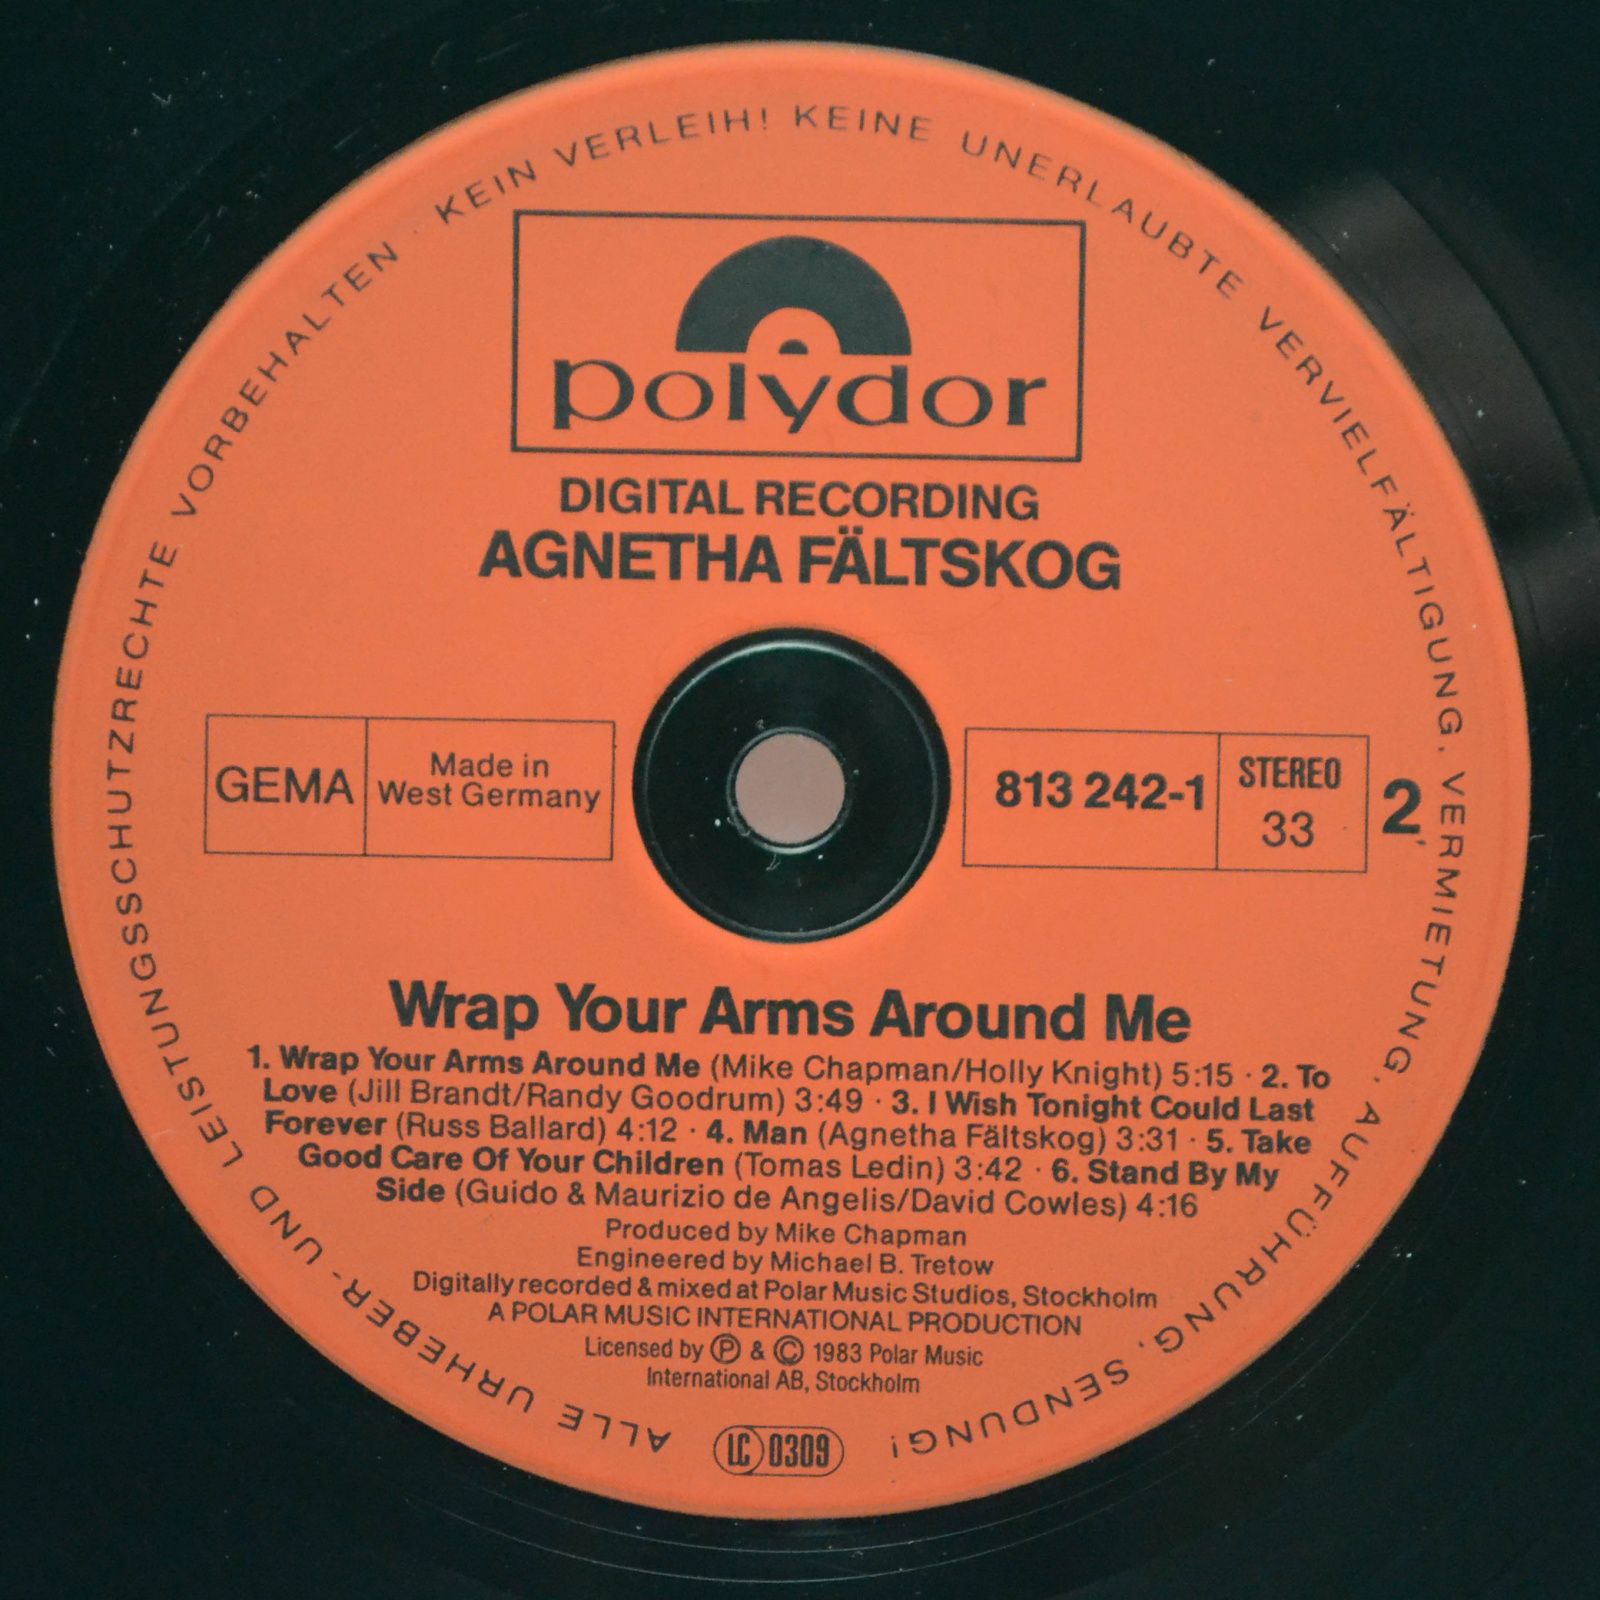 Agnetha Fältskog — Wrap Your Arms Around Me, 1983